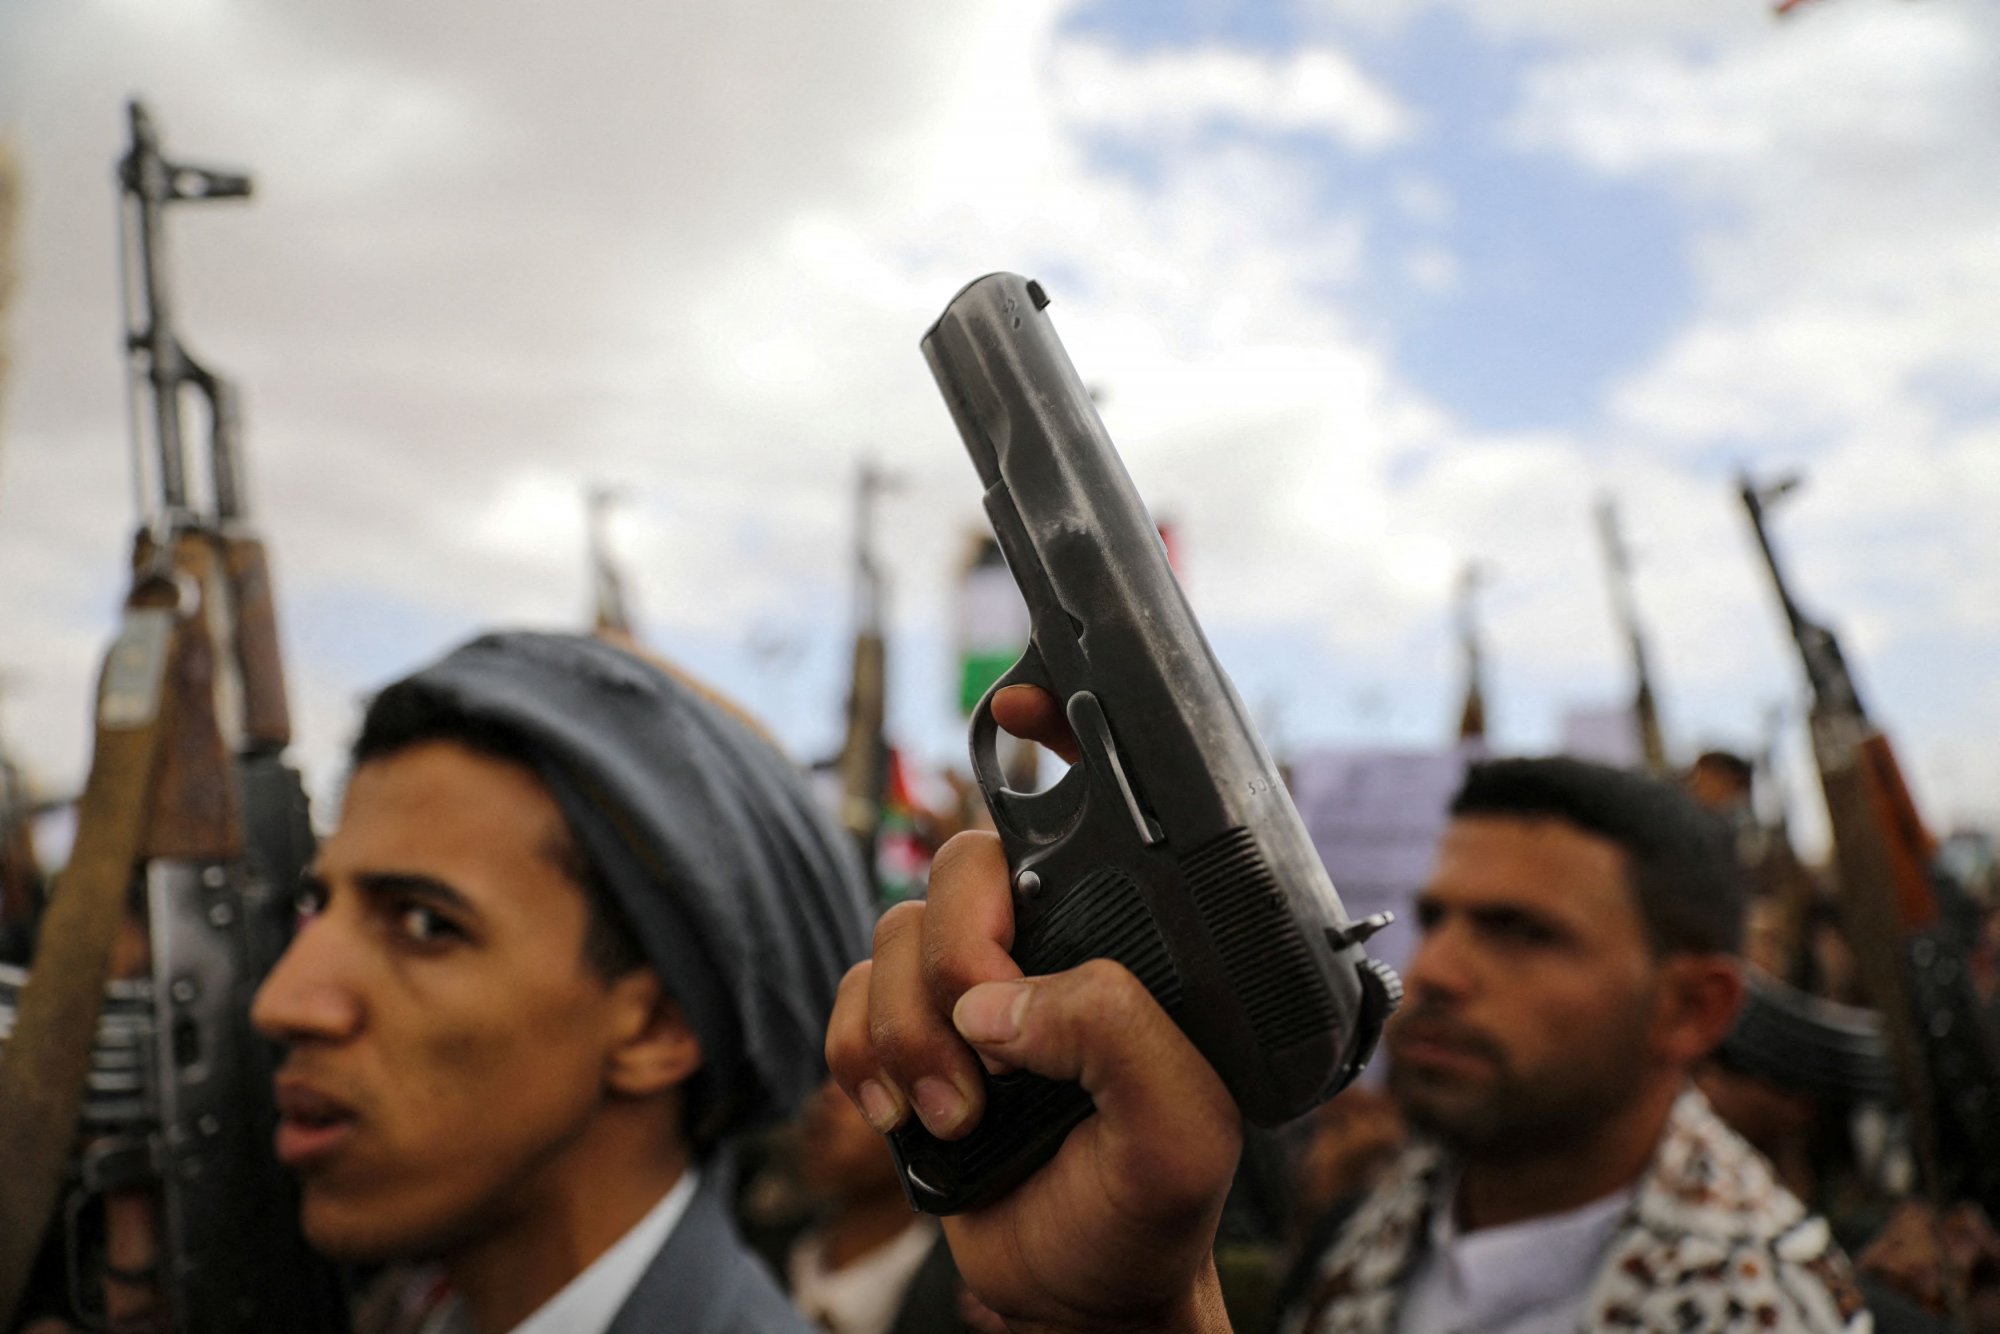 Χούθι: Θα πλήττουμε πλοία σε οποιαδήποτε περιοχή εντός εμβέλειας